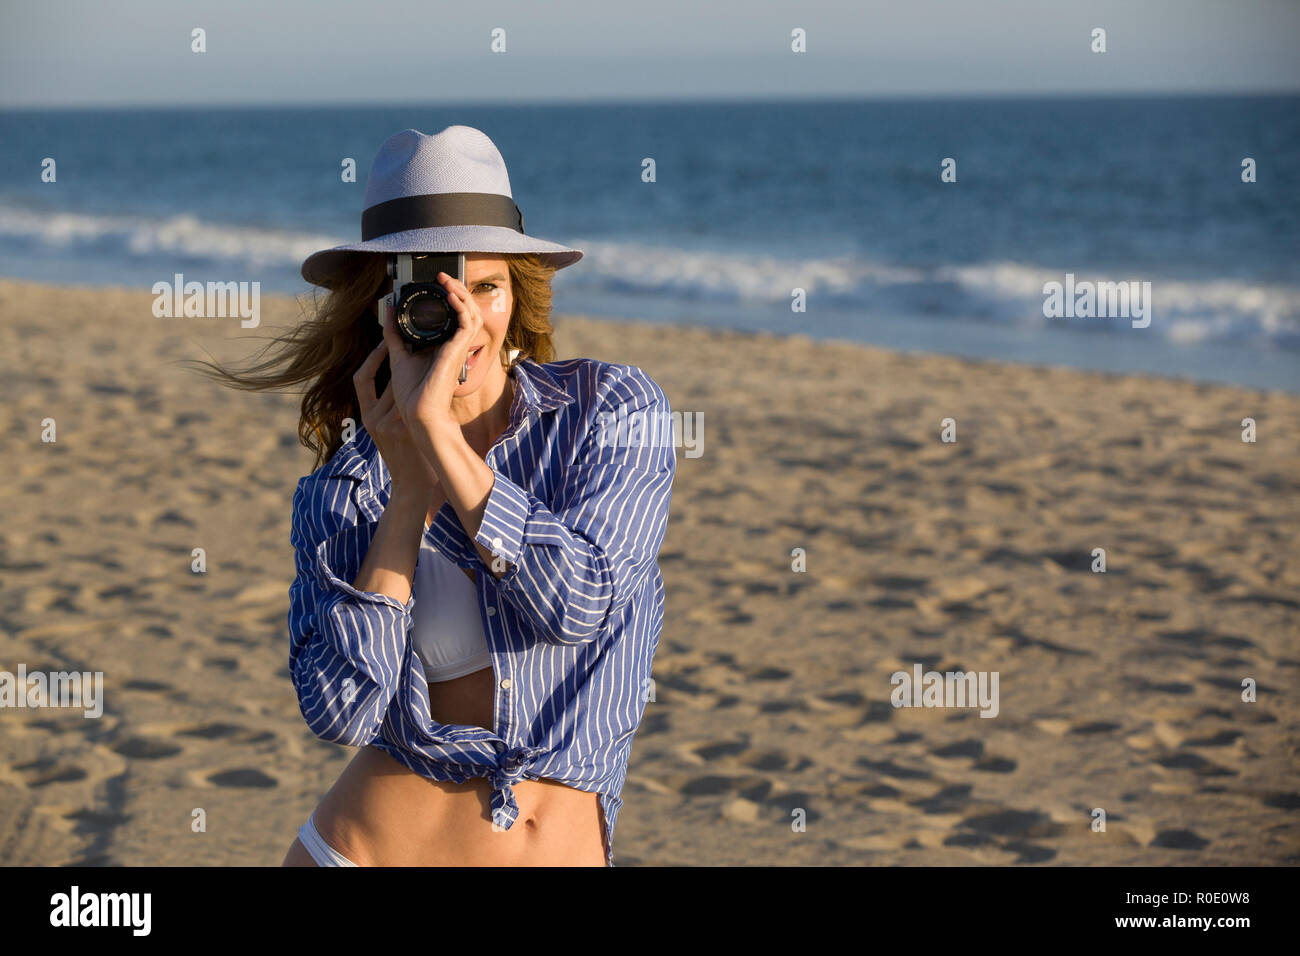 Half-Length ritratto di donna Mid-Adult guardando attraverso la lente della fotocamera in spiaggia Foto Stock